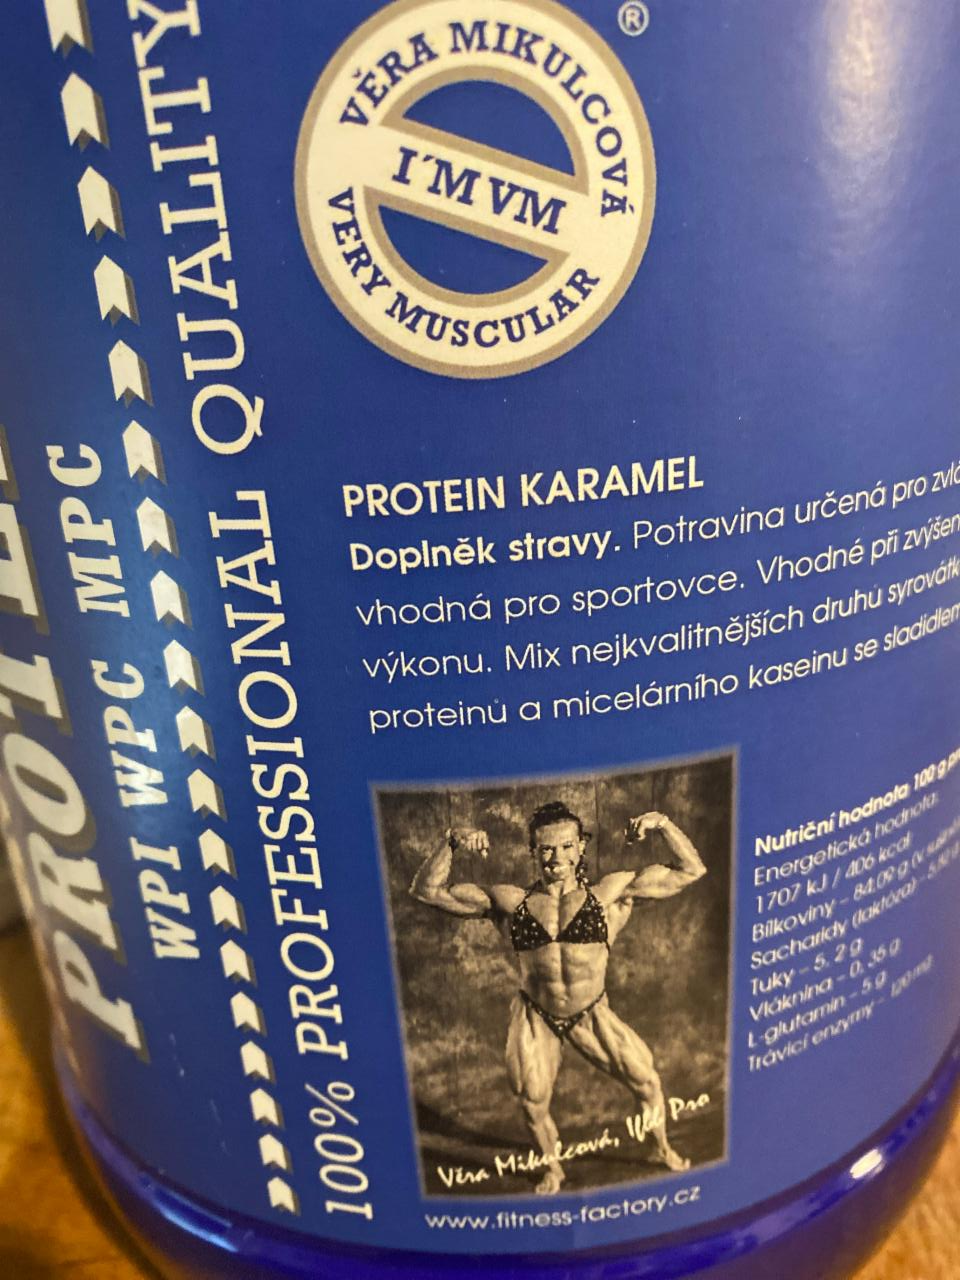 Fotografie - Protein IM VM karamel